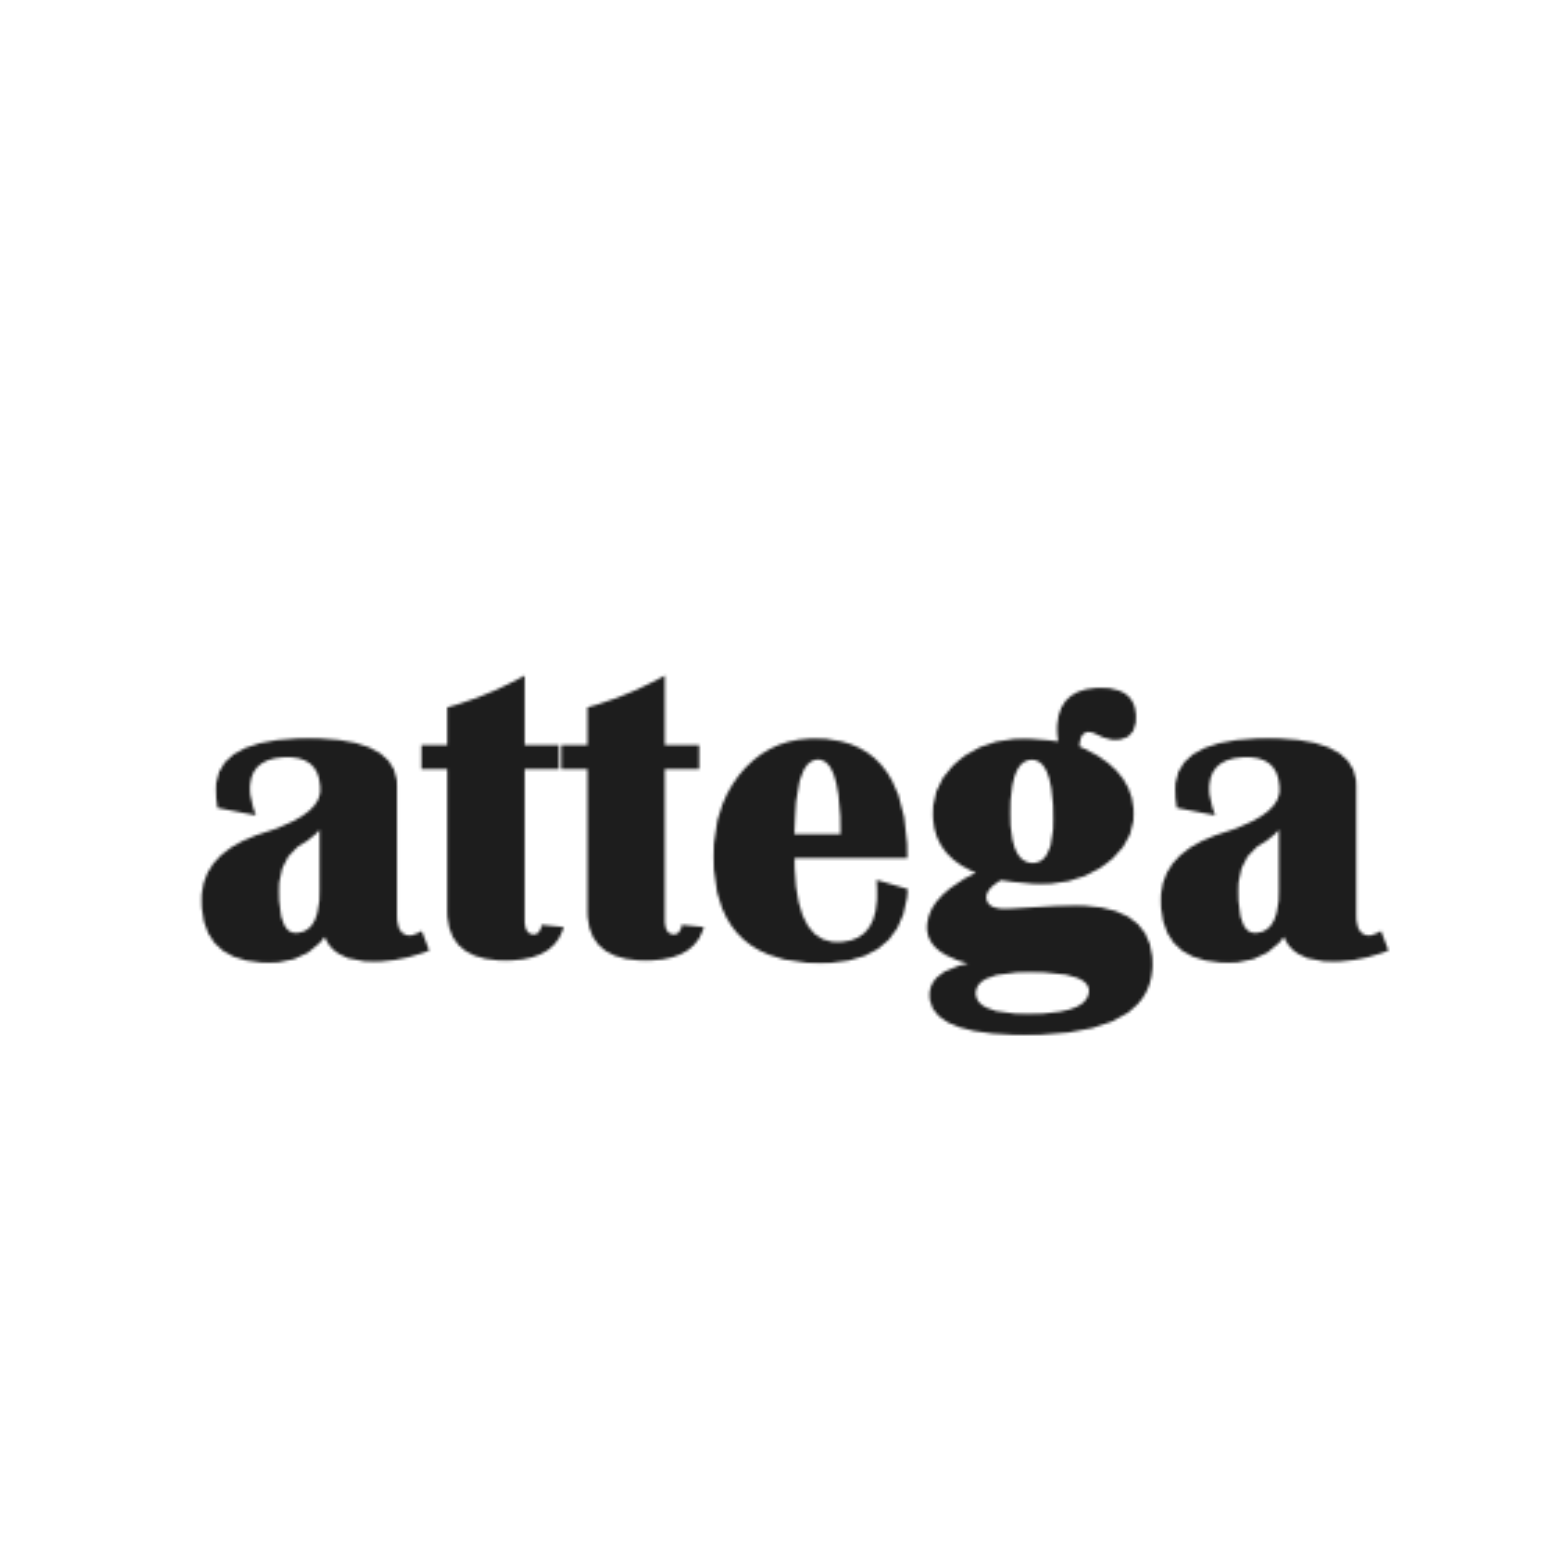 Attega